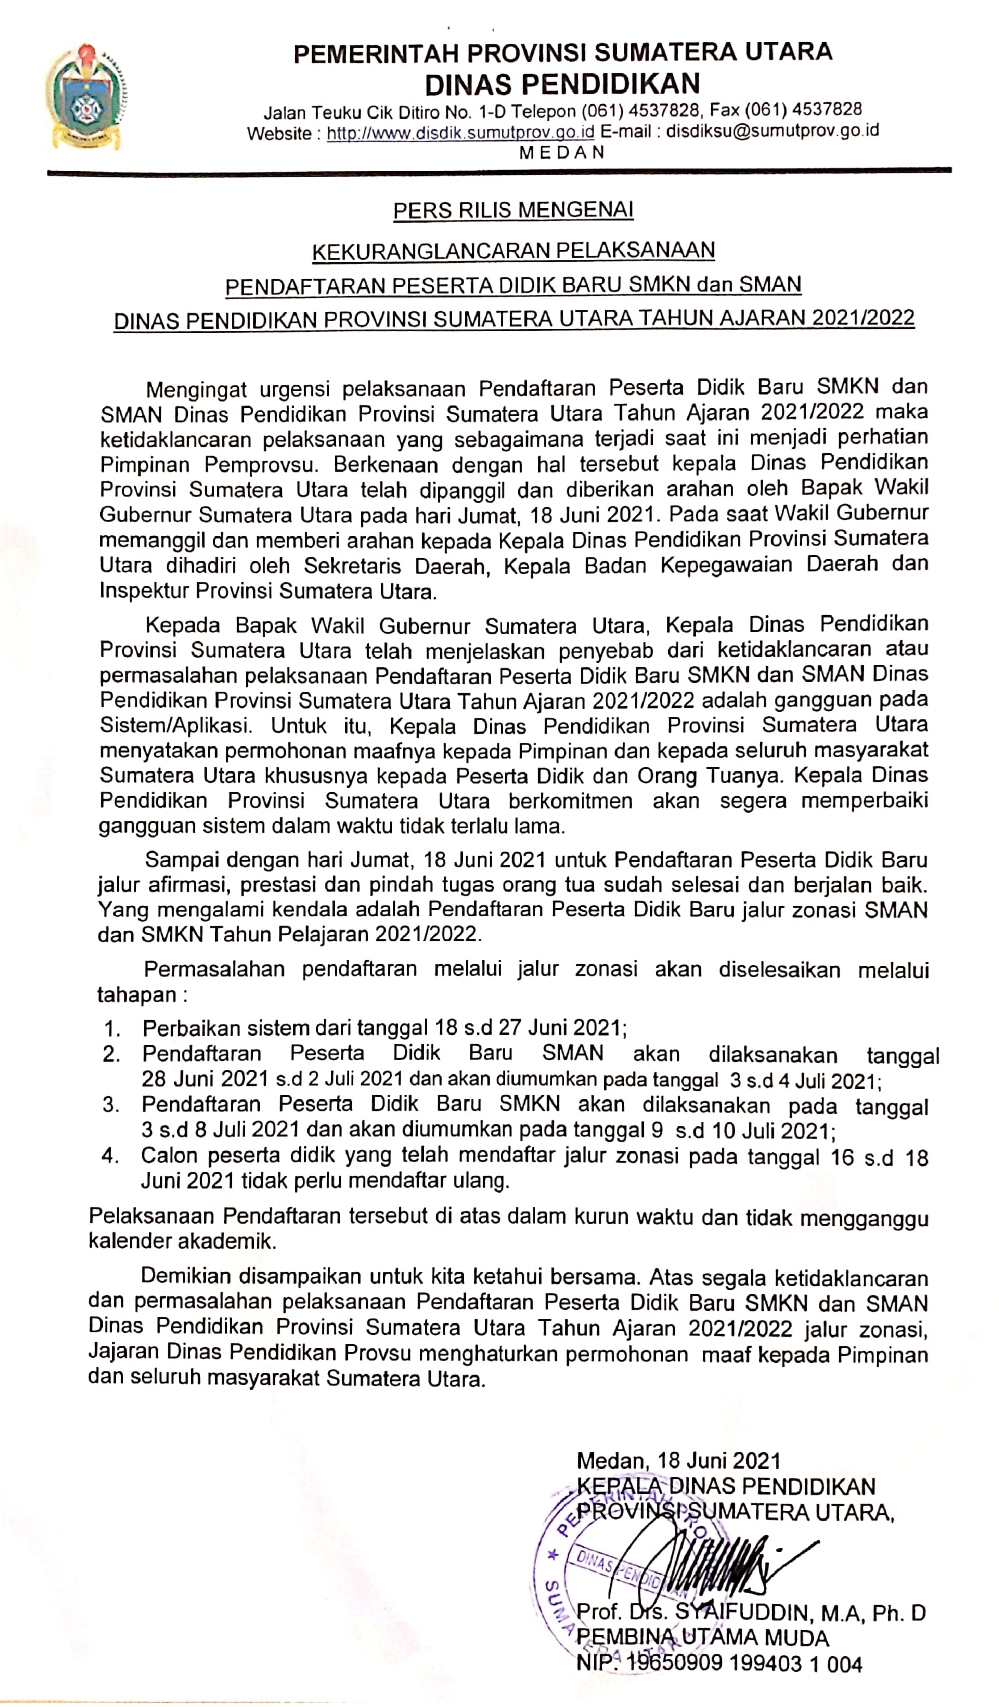 Ppdb.disdik.sumutprov.go.id 2021